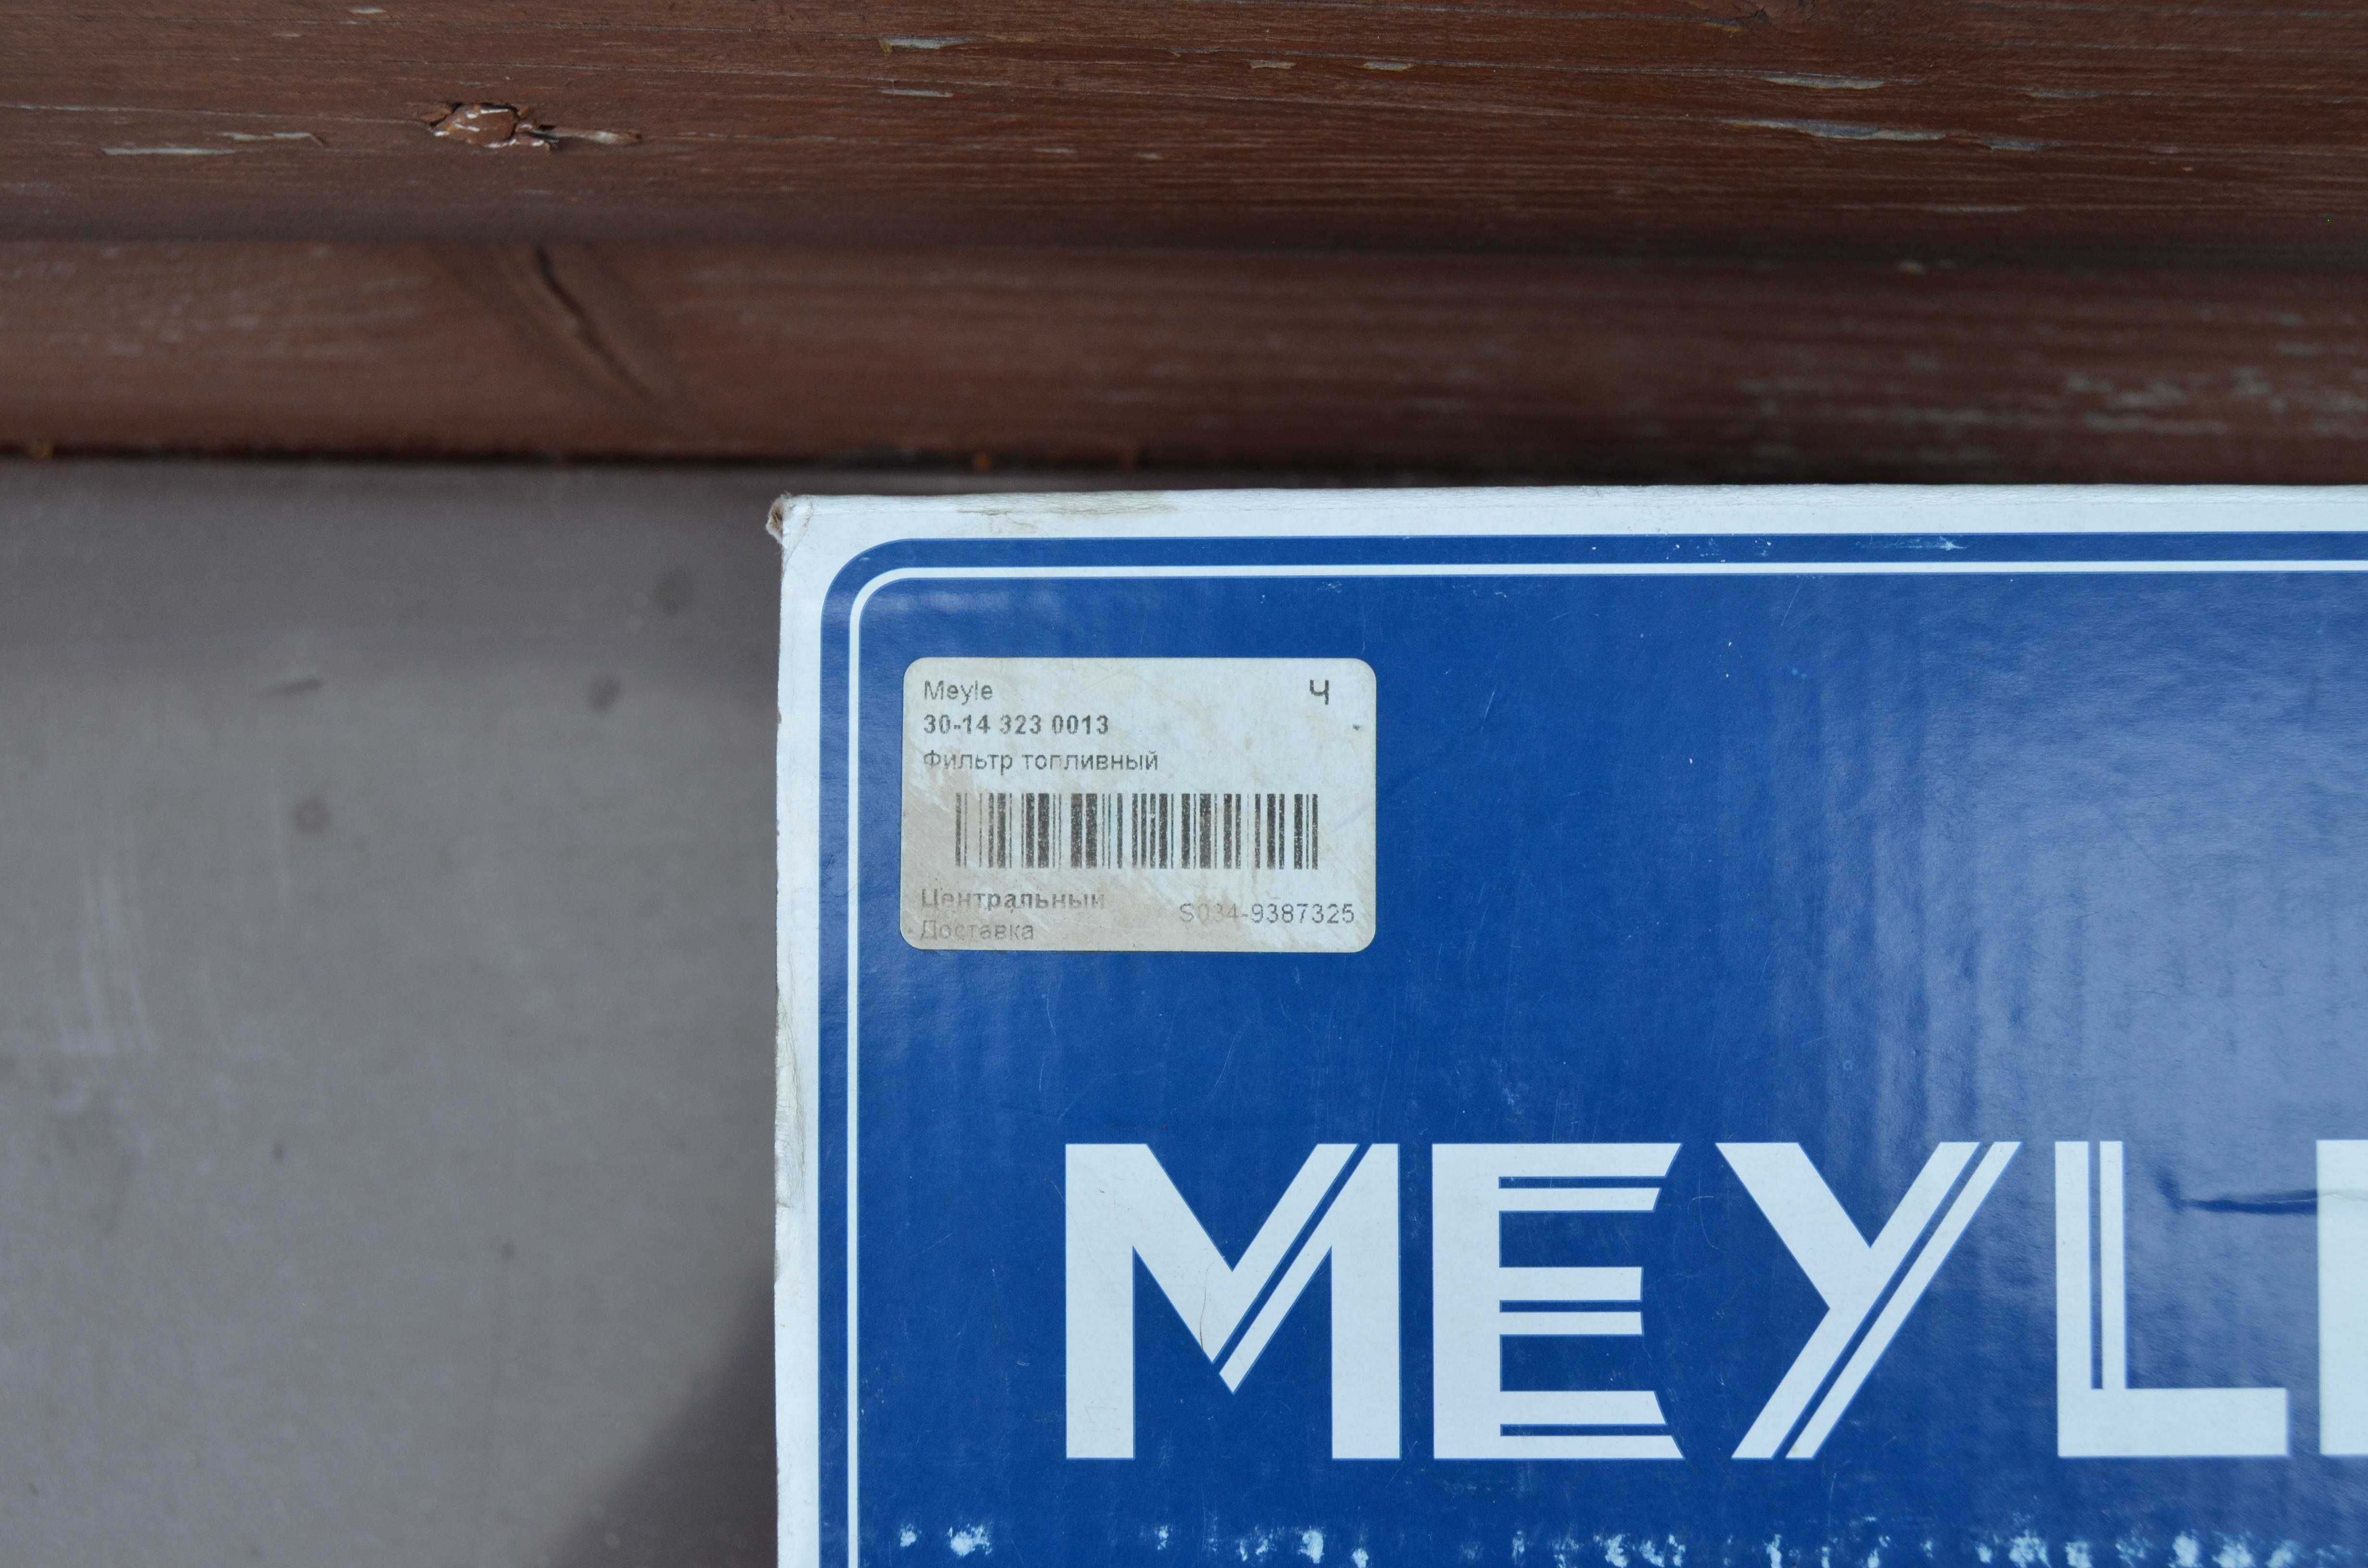 Топливный фильтр Meyle 30-143230013 для TOYOTA LEXUS